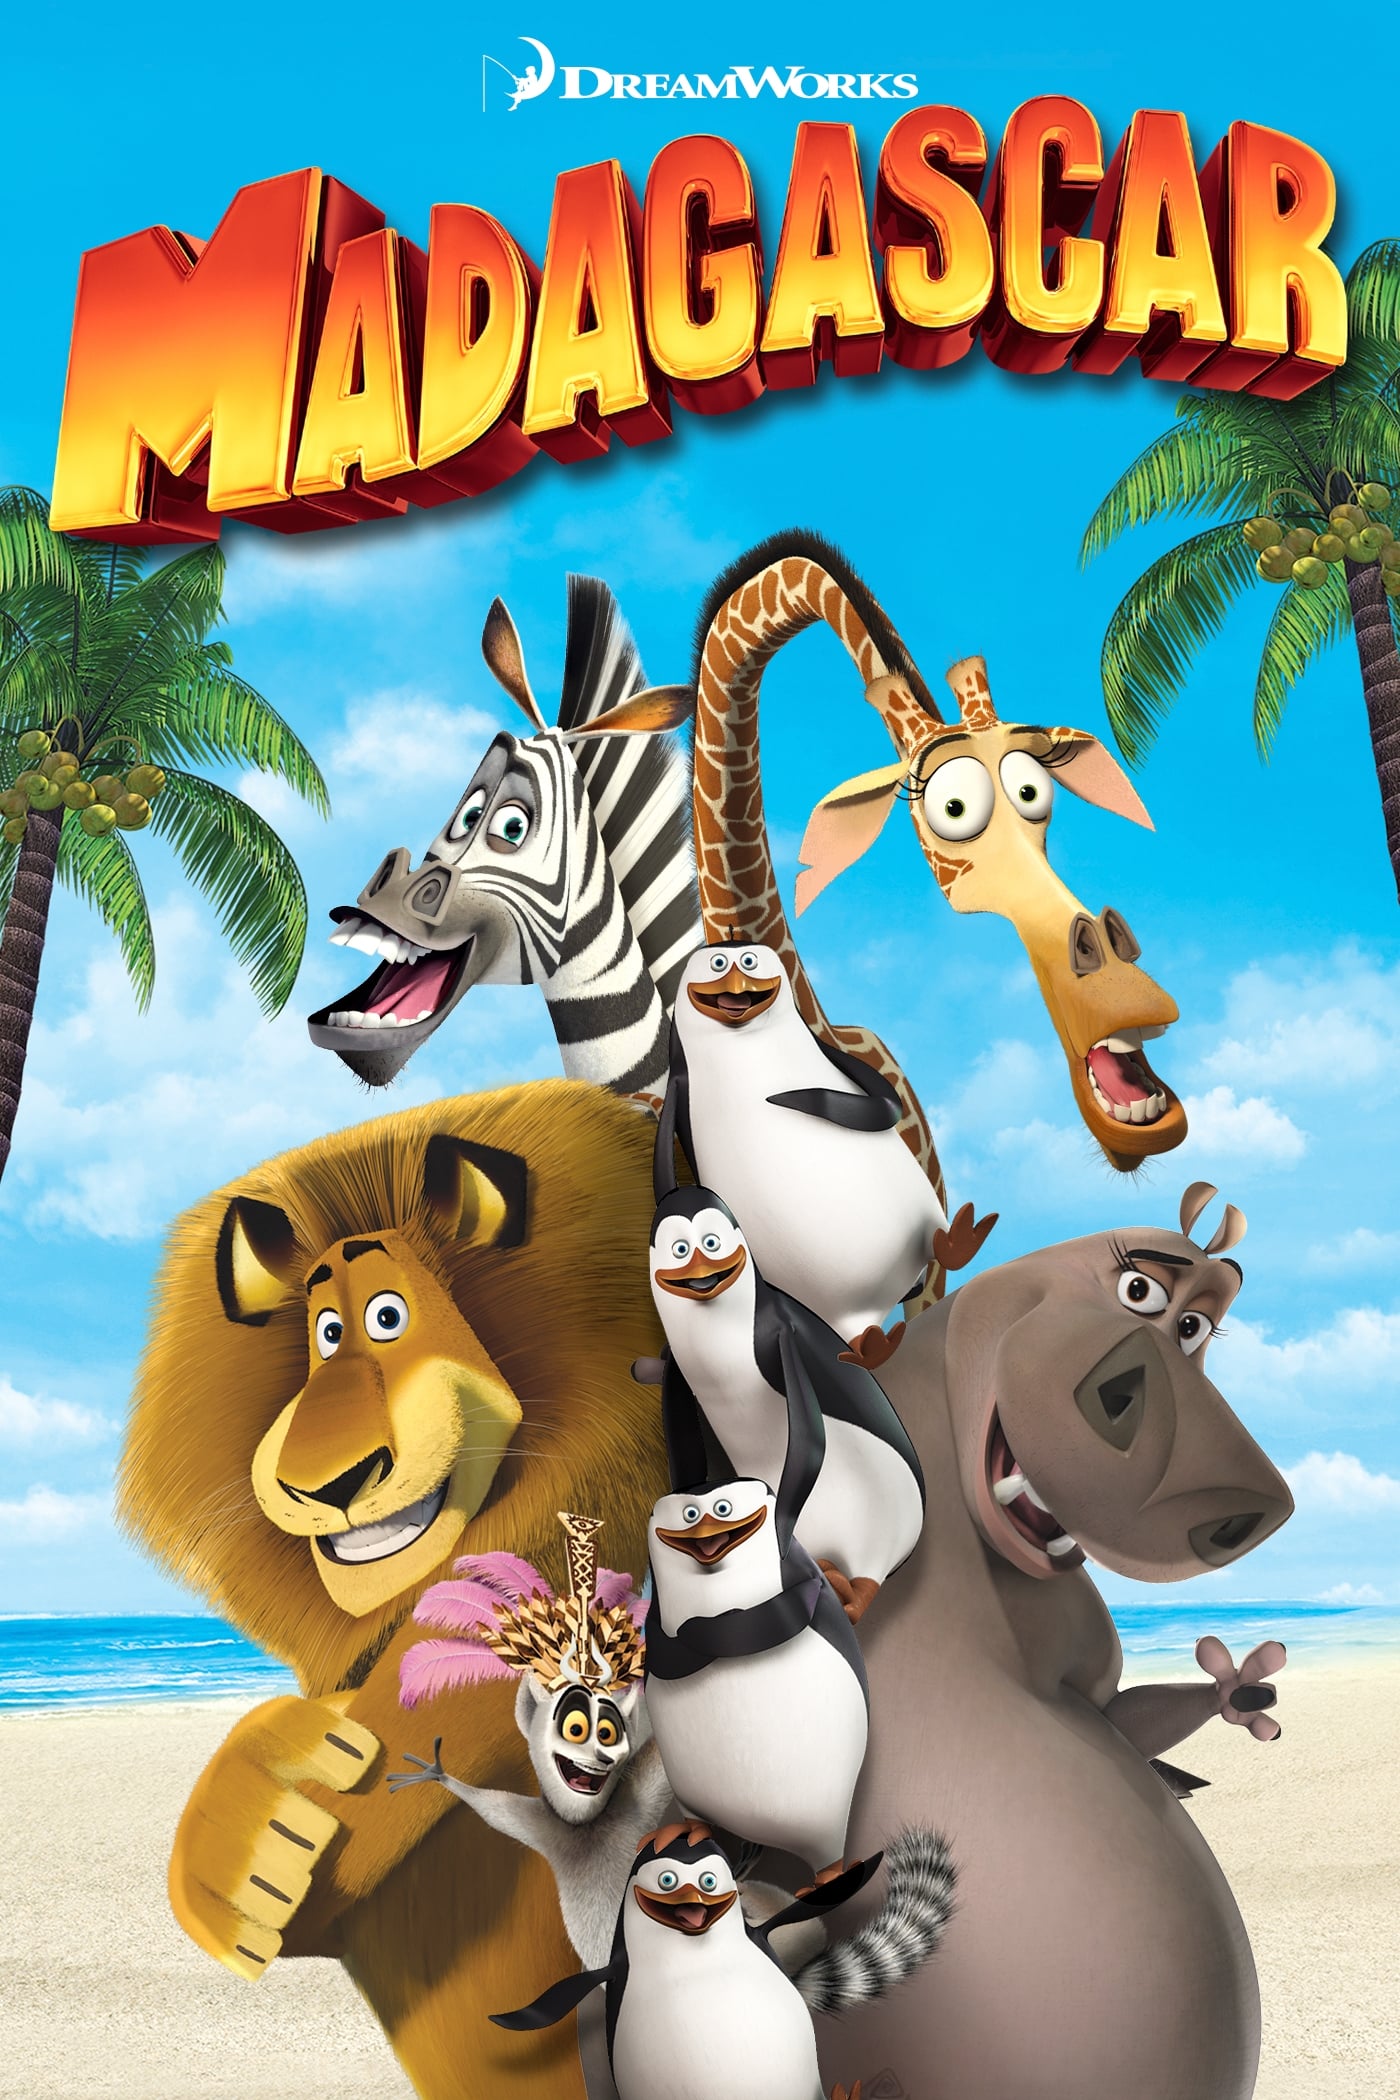 Madagascar, The Dubbing Database